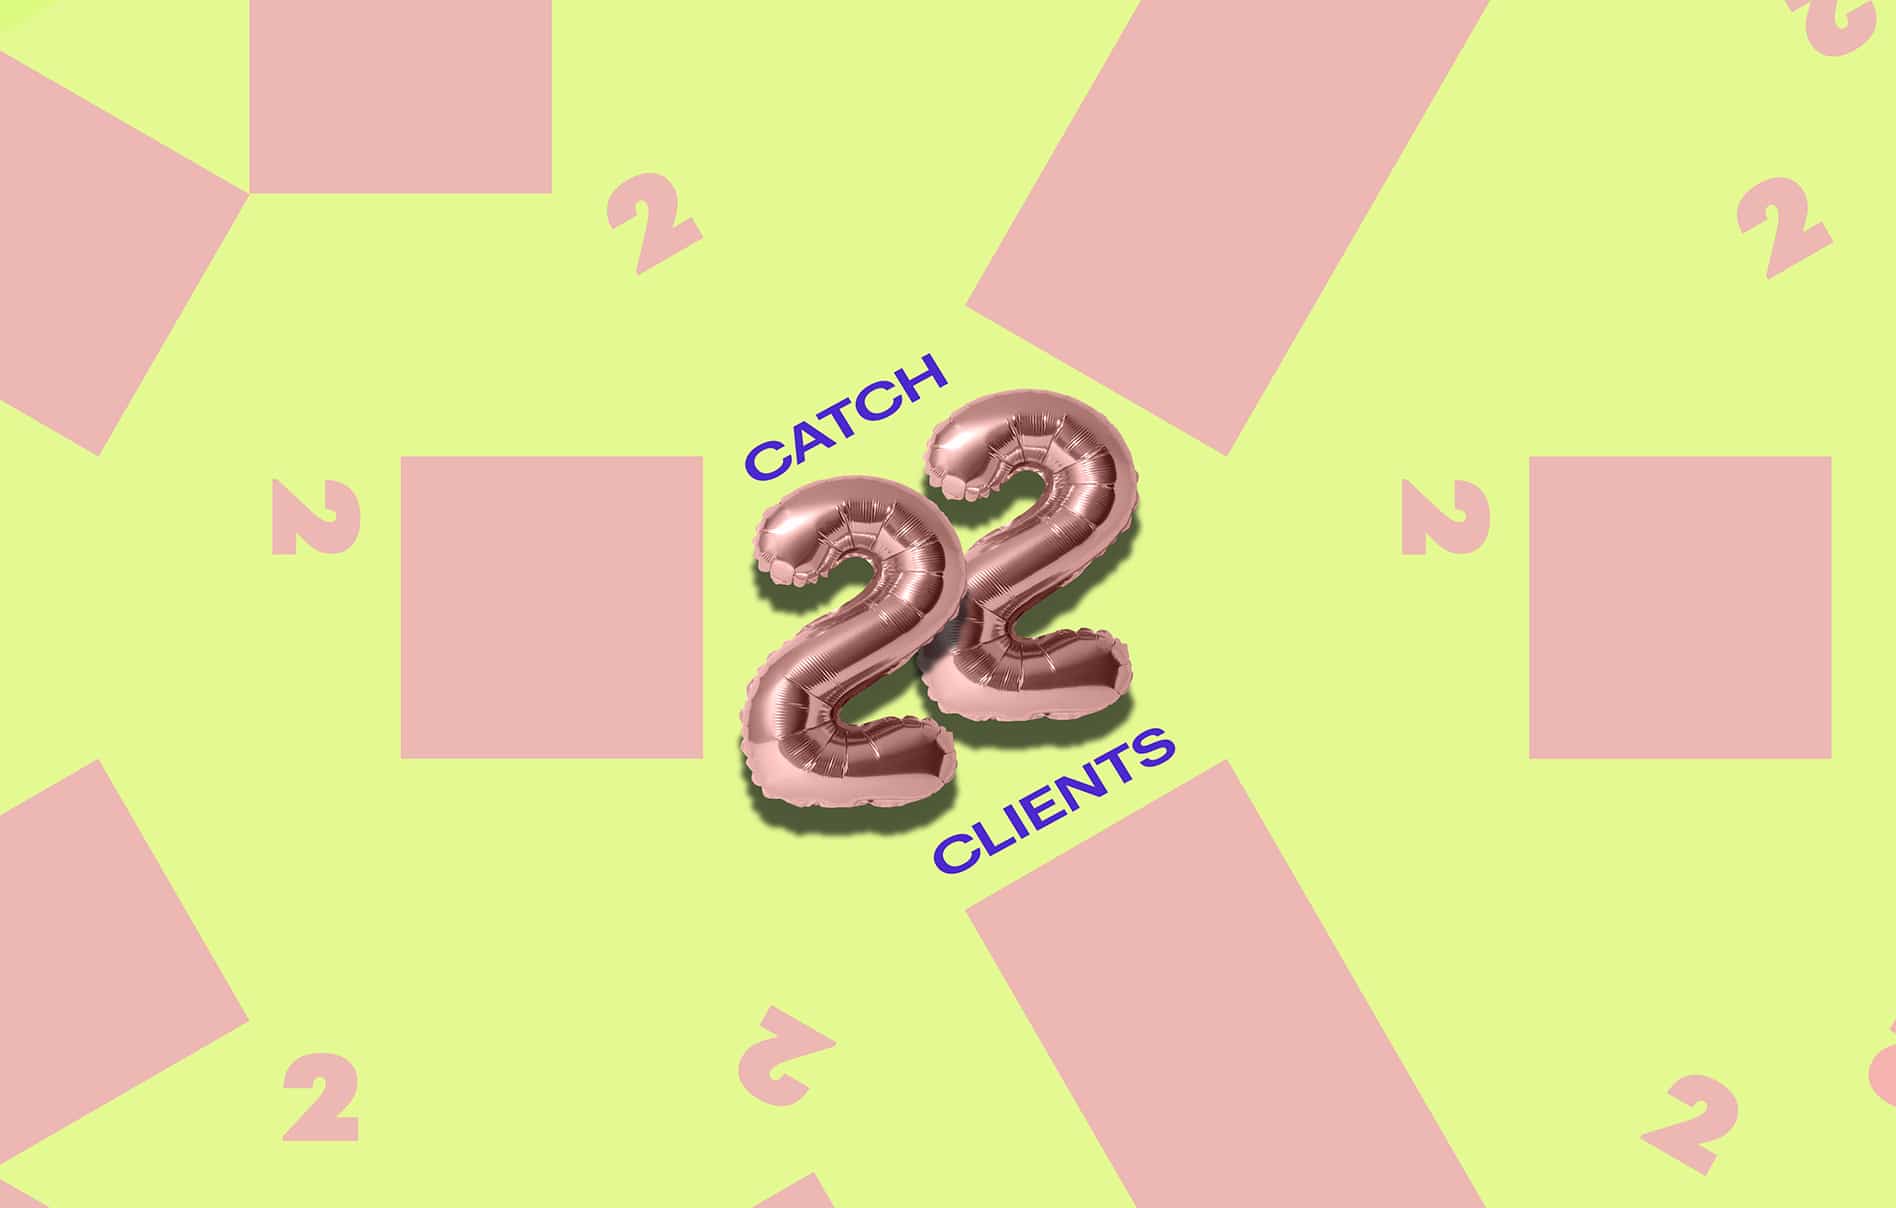 Catch 22 Clients